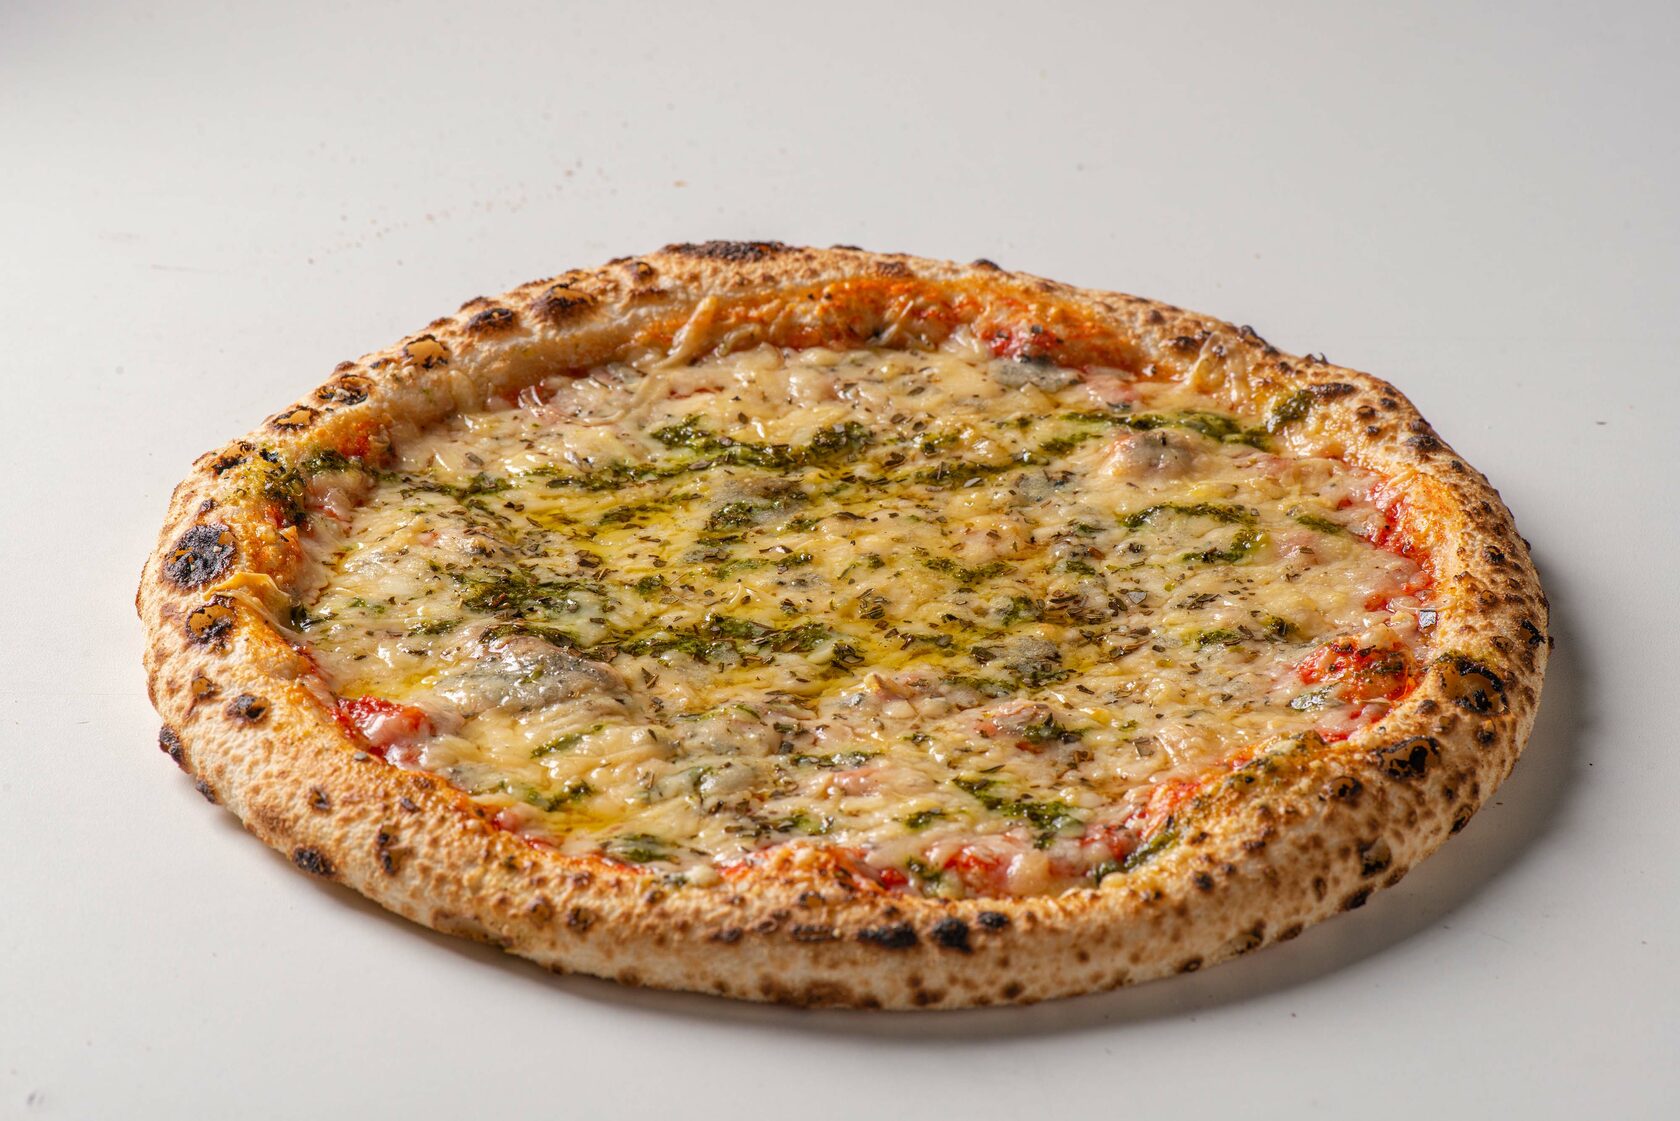 рецепт пиццы 4 сыра на английском языке фото 95